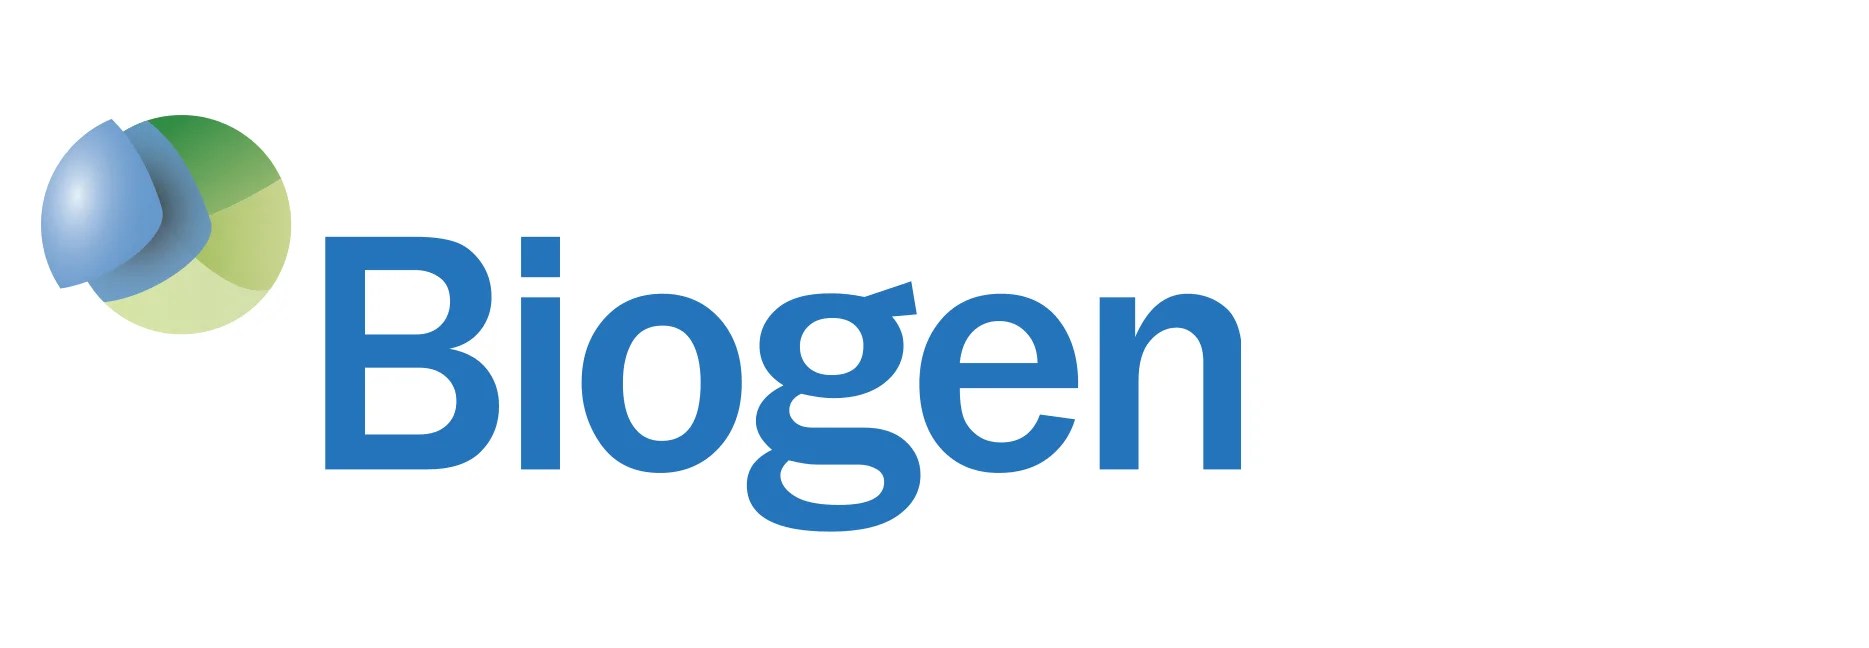 Logo - Biogen